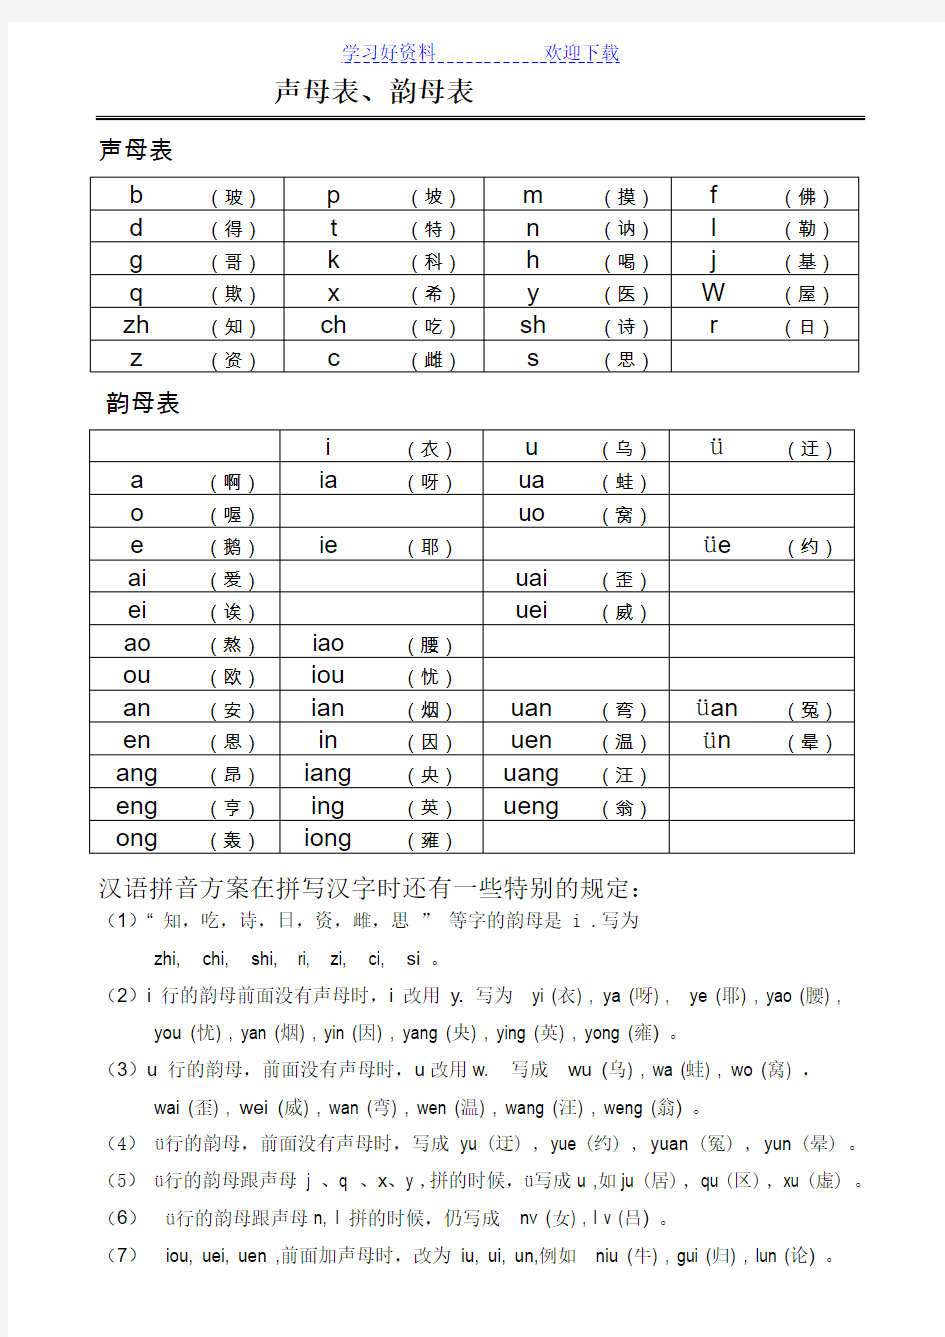 声母表和韵母表汉语拼音音节表(排版清晰内容准确便于孩子或成人自学)